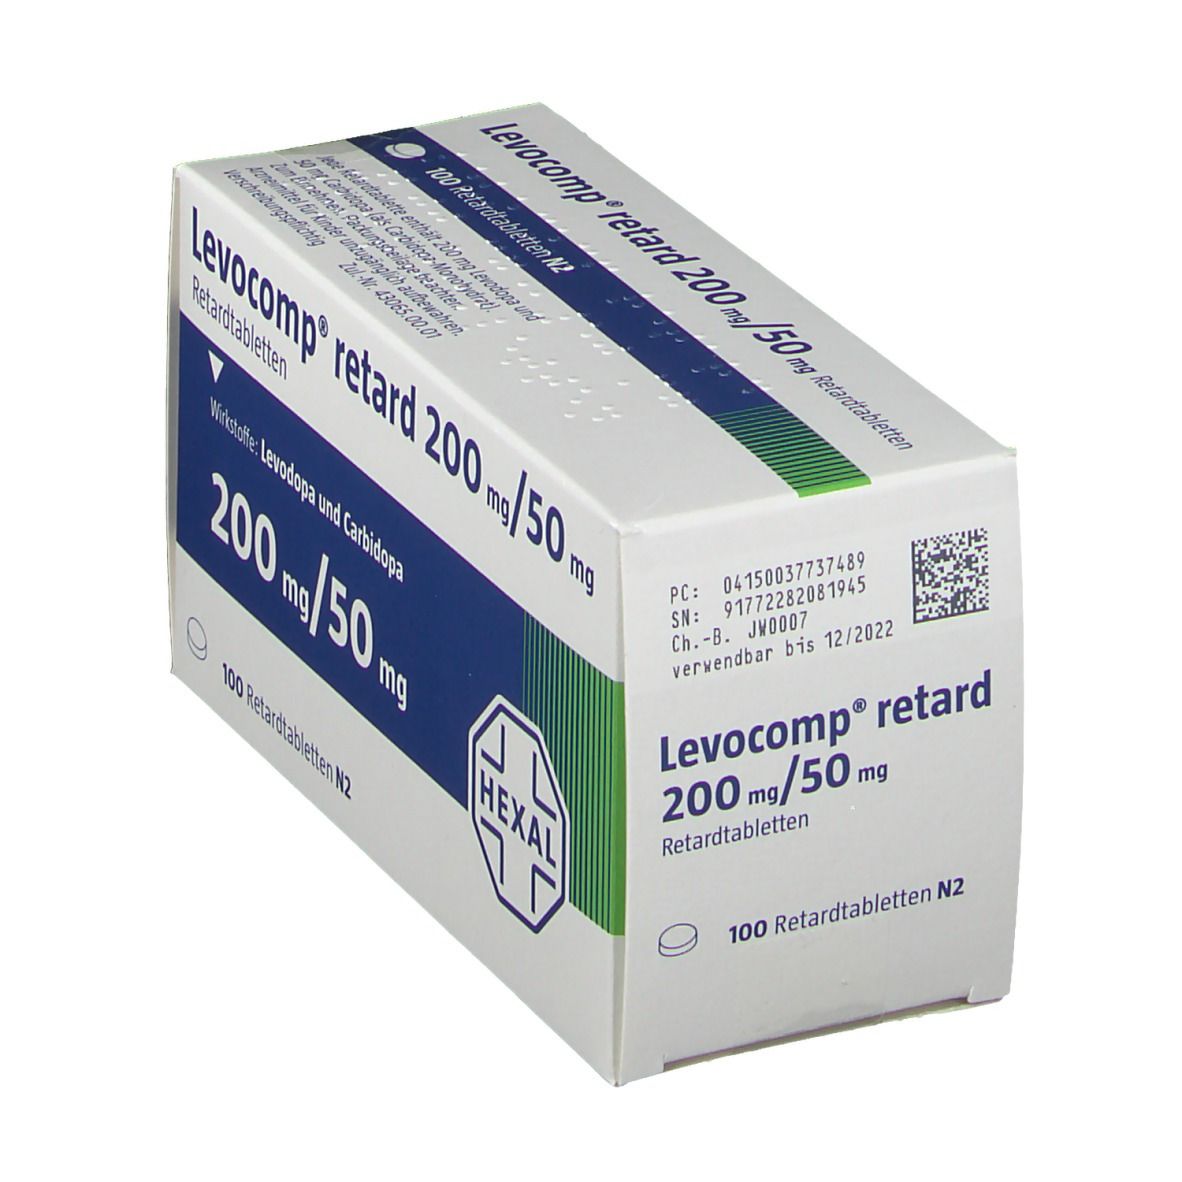 Levocomp® 200 mg/50 mg